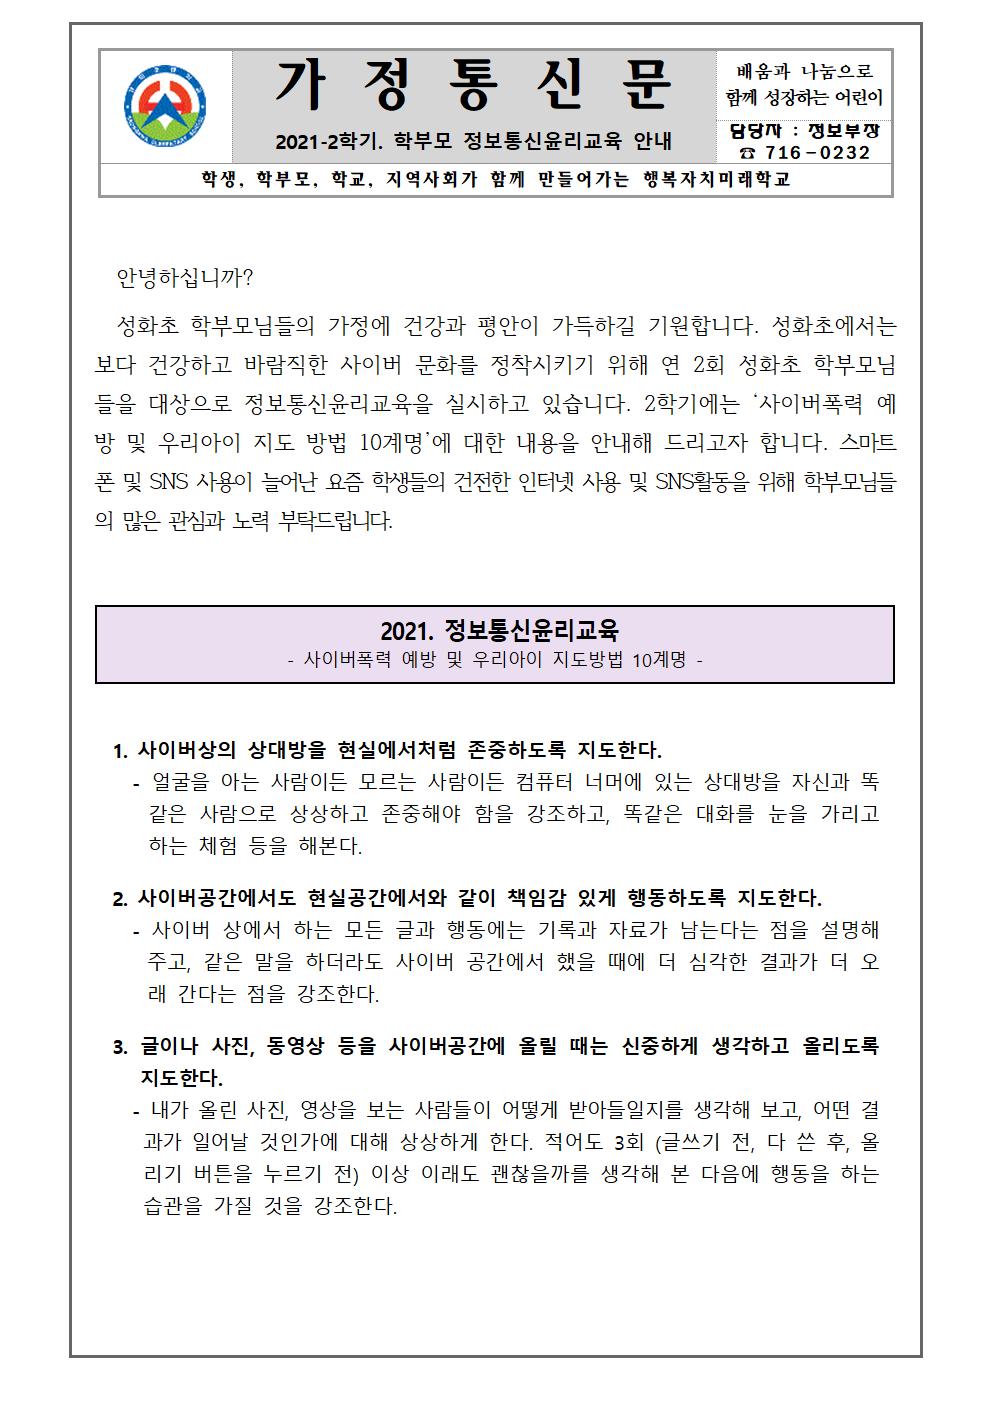 2학기 학부모 정보통신윤리교육 가정통신문001